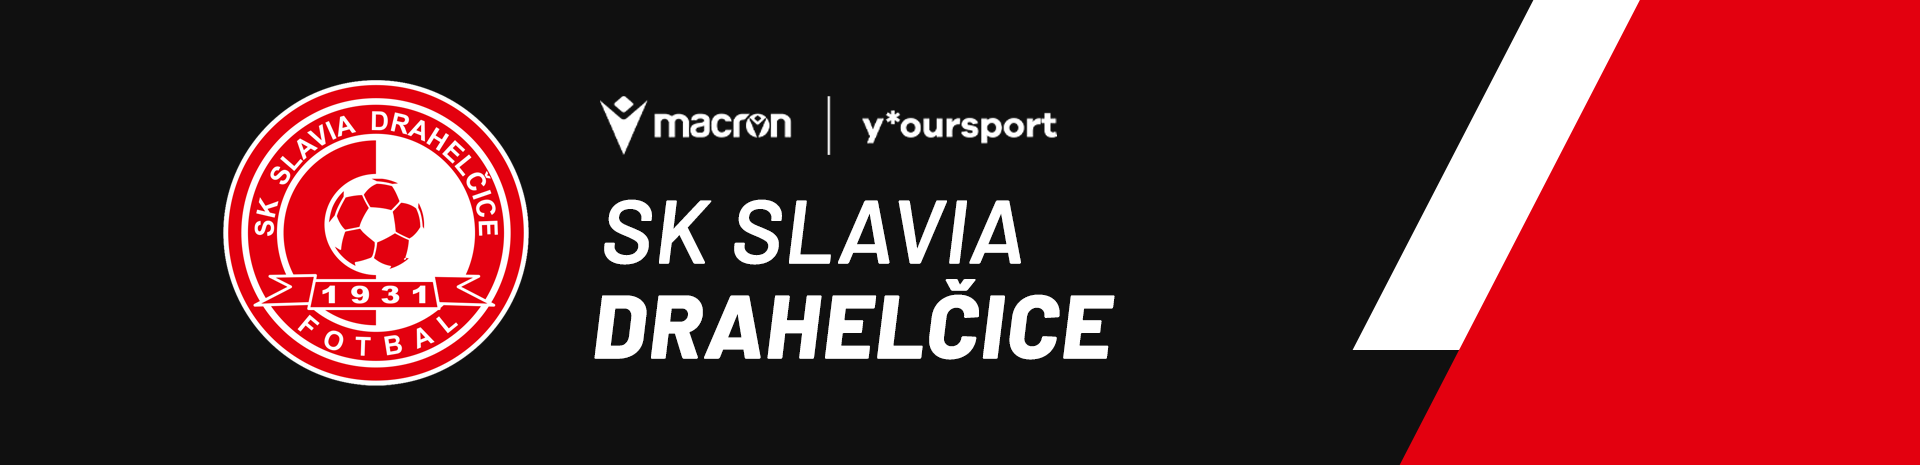 SK Slavia Drahelčice desktop